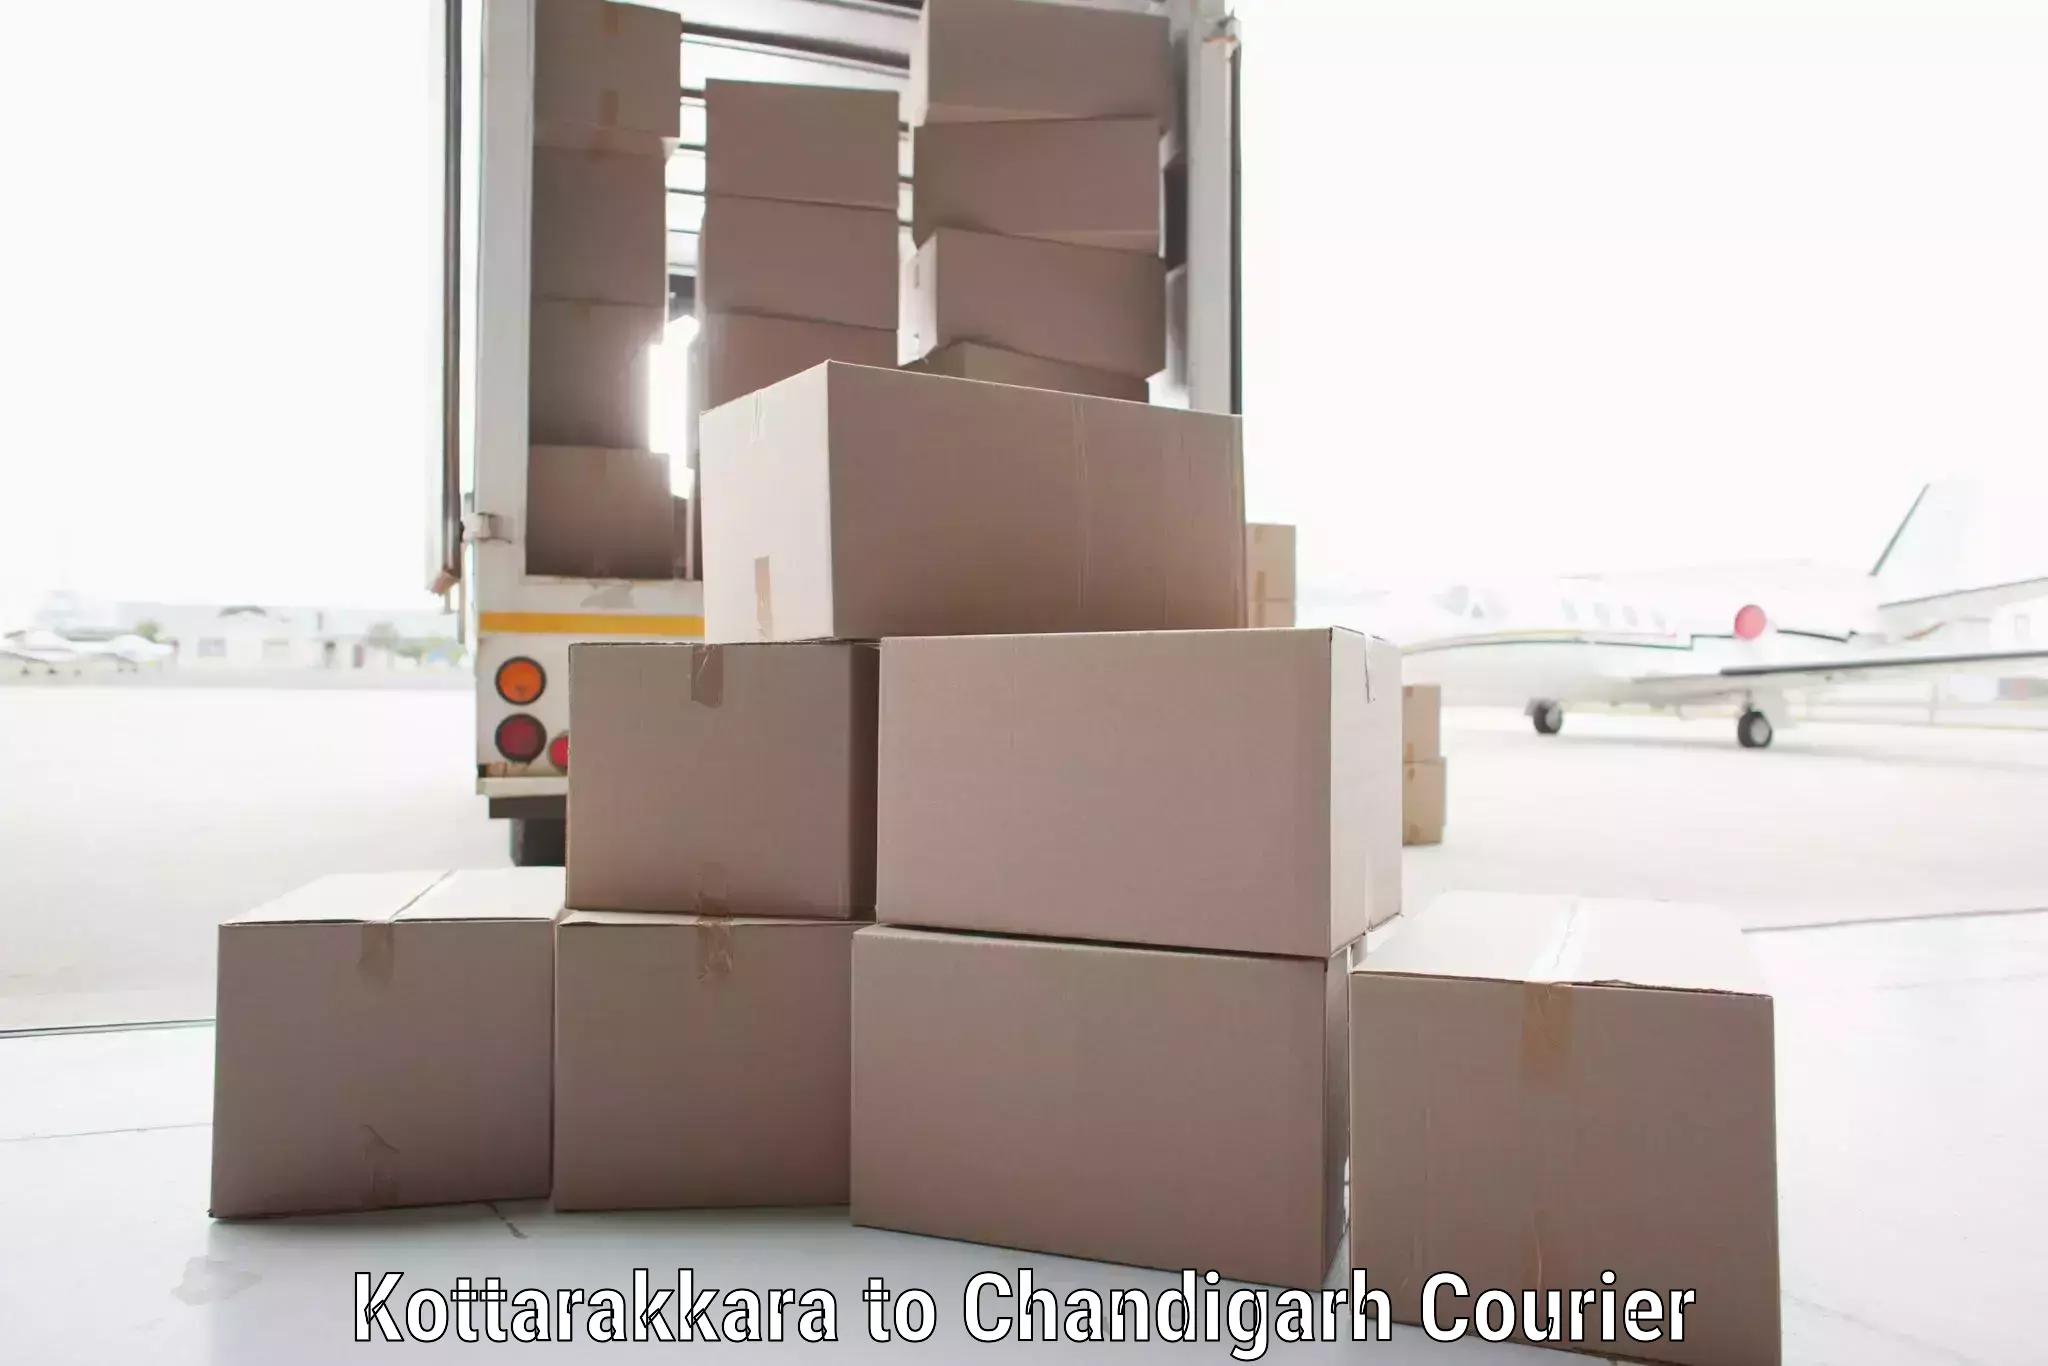 Doorstep delivery service Kottarakkara to Chandigarh